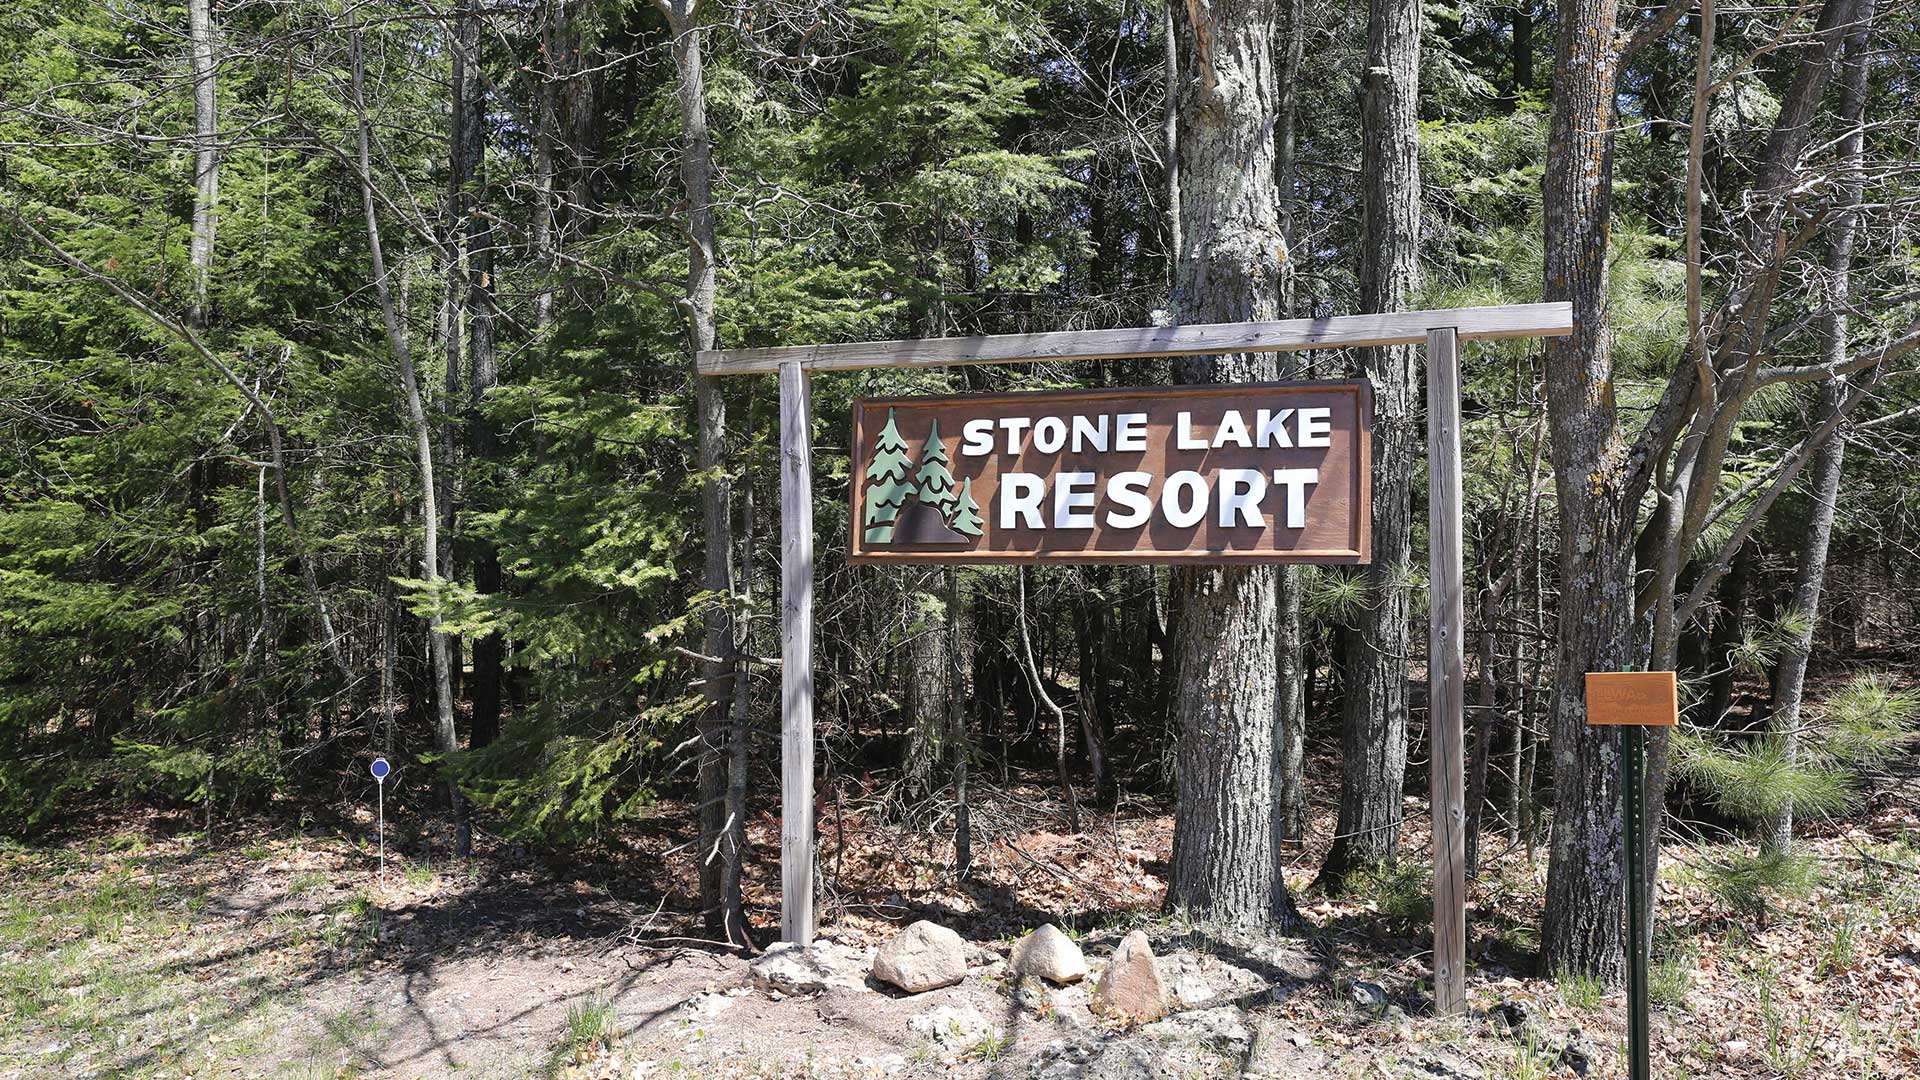 Stone Lake Resort | Stone Lake Resort sign